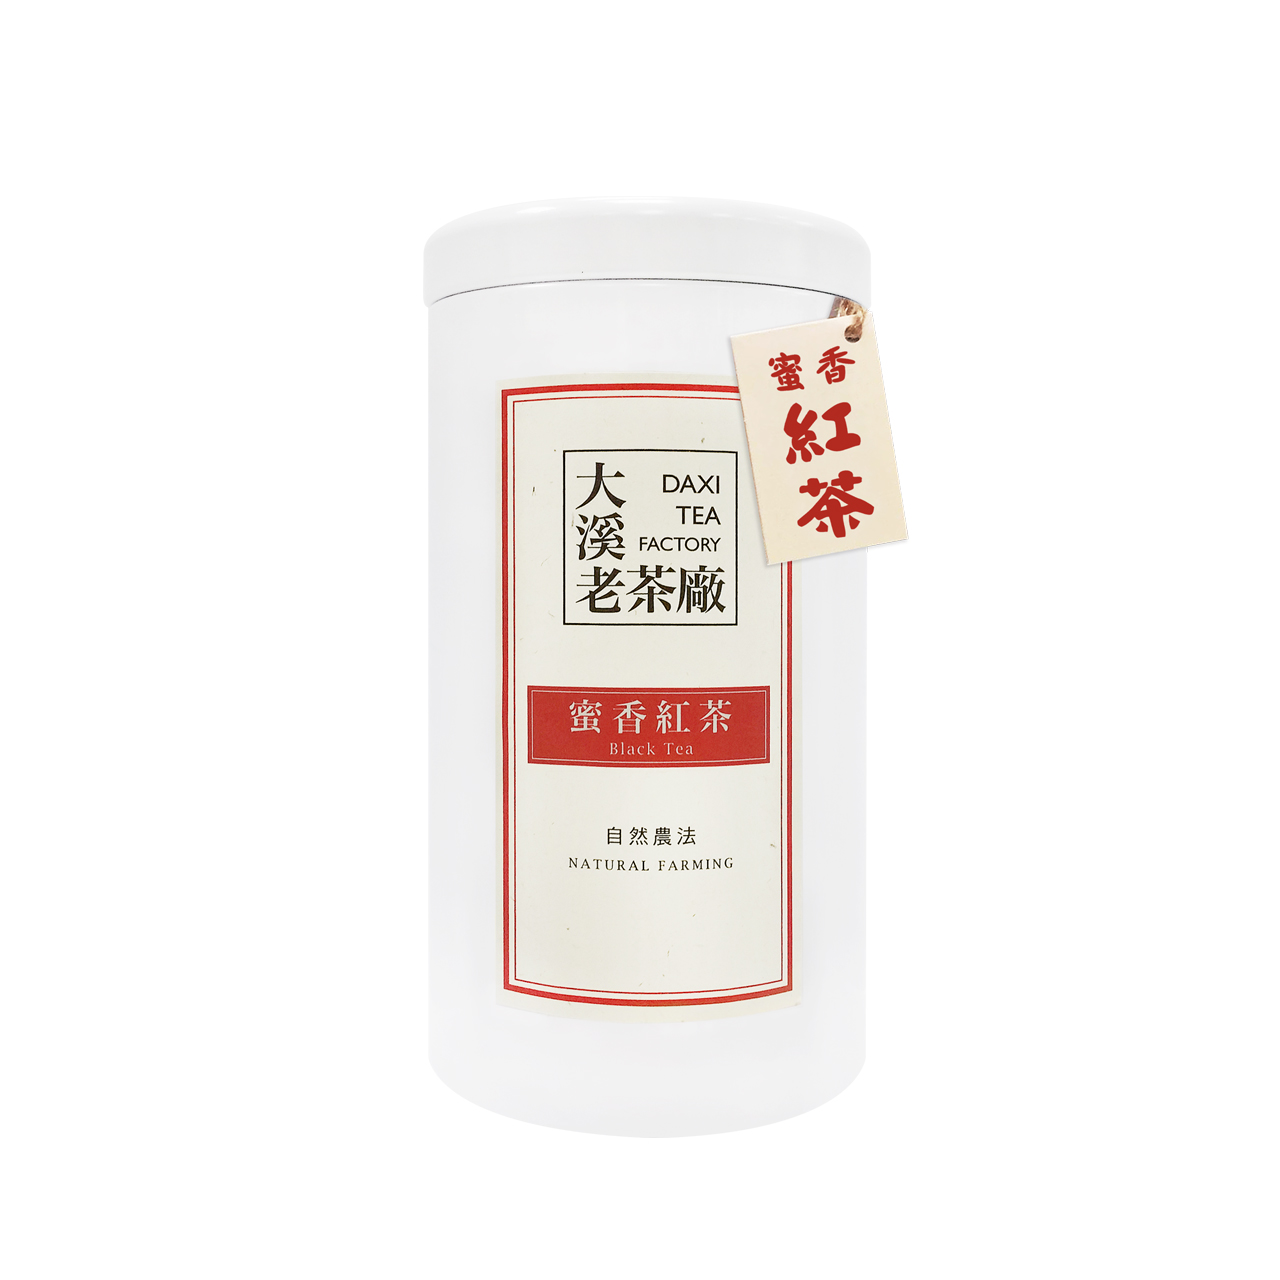 Daxi-Black Tea(Natural Farming)